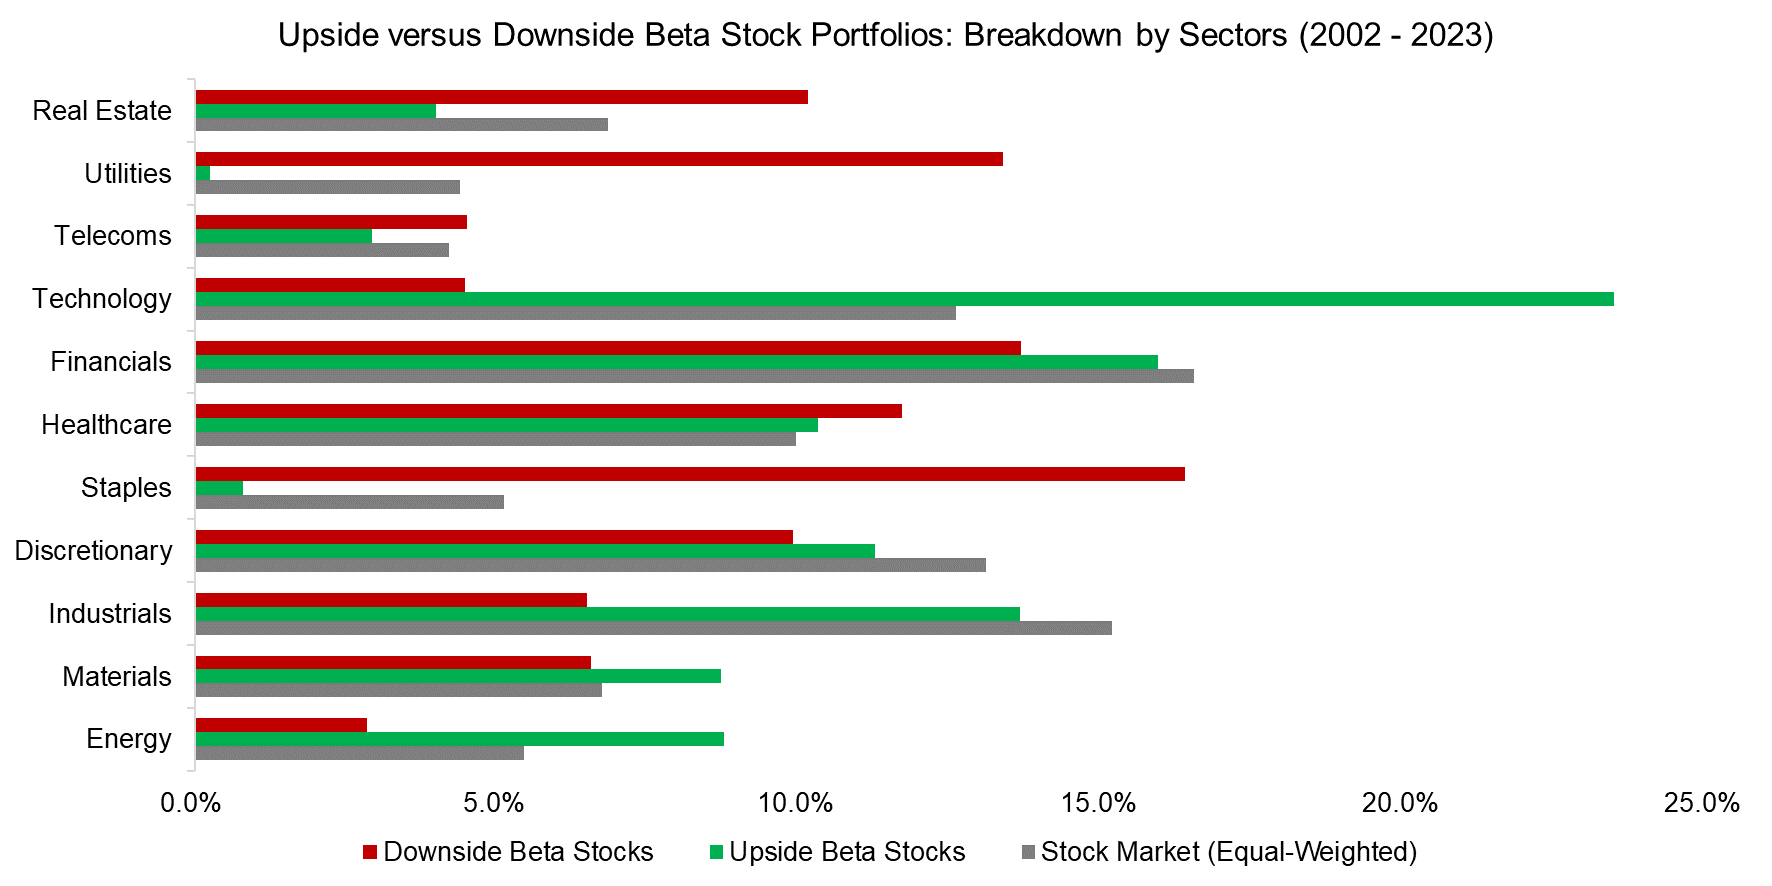 Upside versus Downside Beta Stock Portfolios Breakdown by Sectors (2002 - 2023)